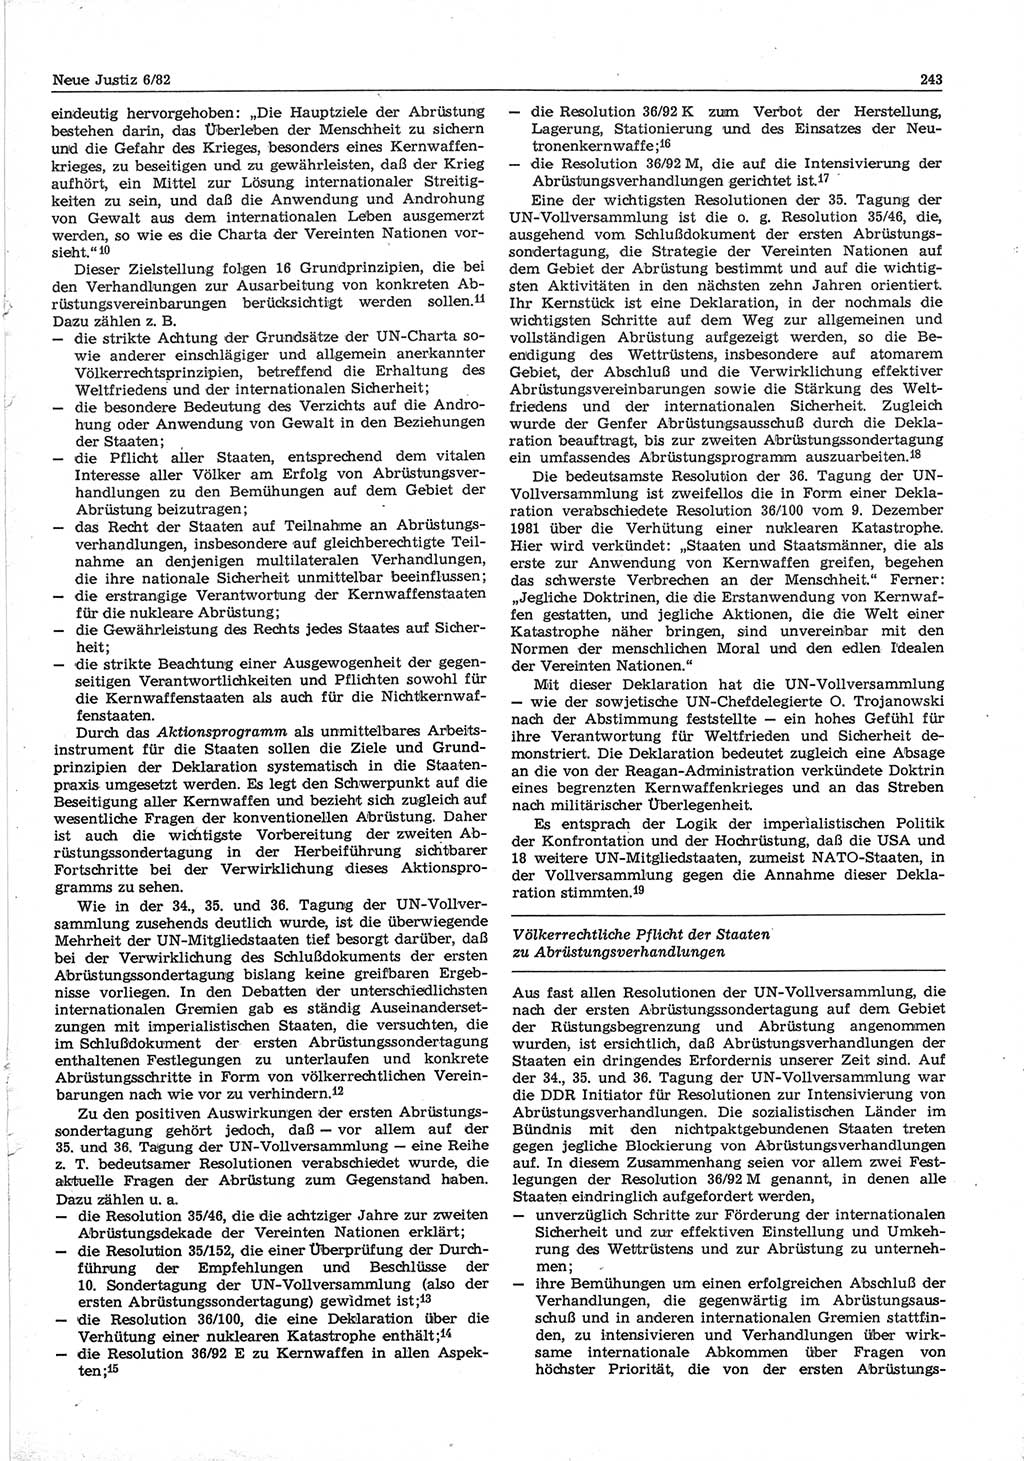 Neue Justiz (NJ), Zeitschrift für sozialistisches Recht und Gesetzlichkeit [Deutsche Demokratische Republik (DDR)], 36. Jahrgang 1982, Seite 243 (NJ DDR 1982, S. 243)